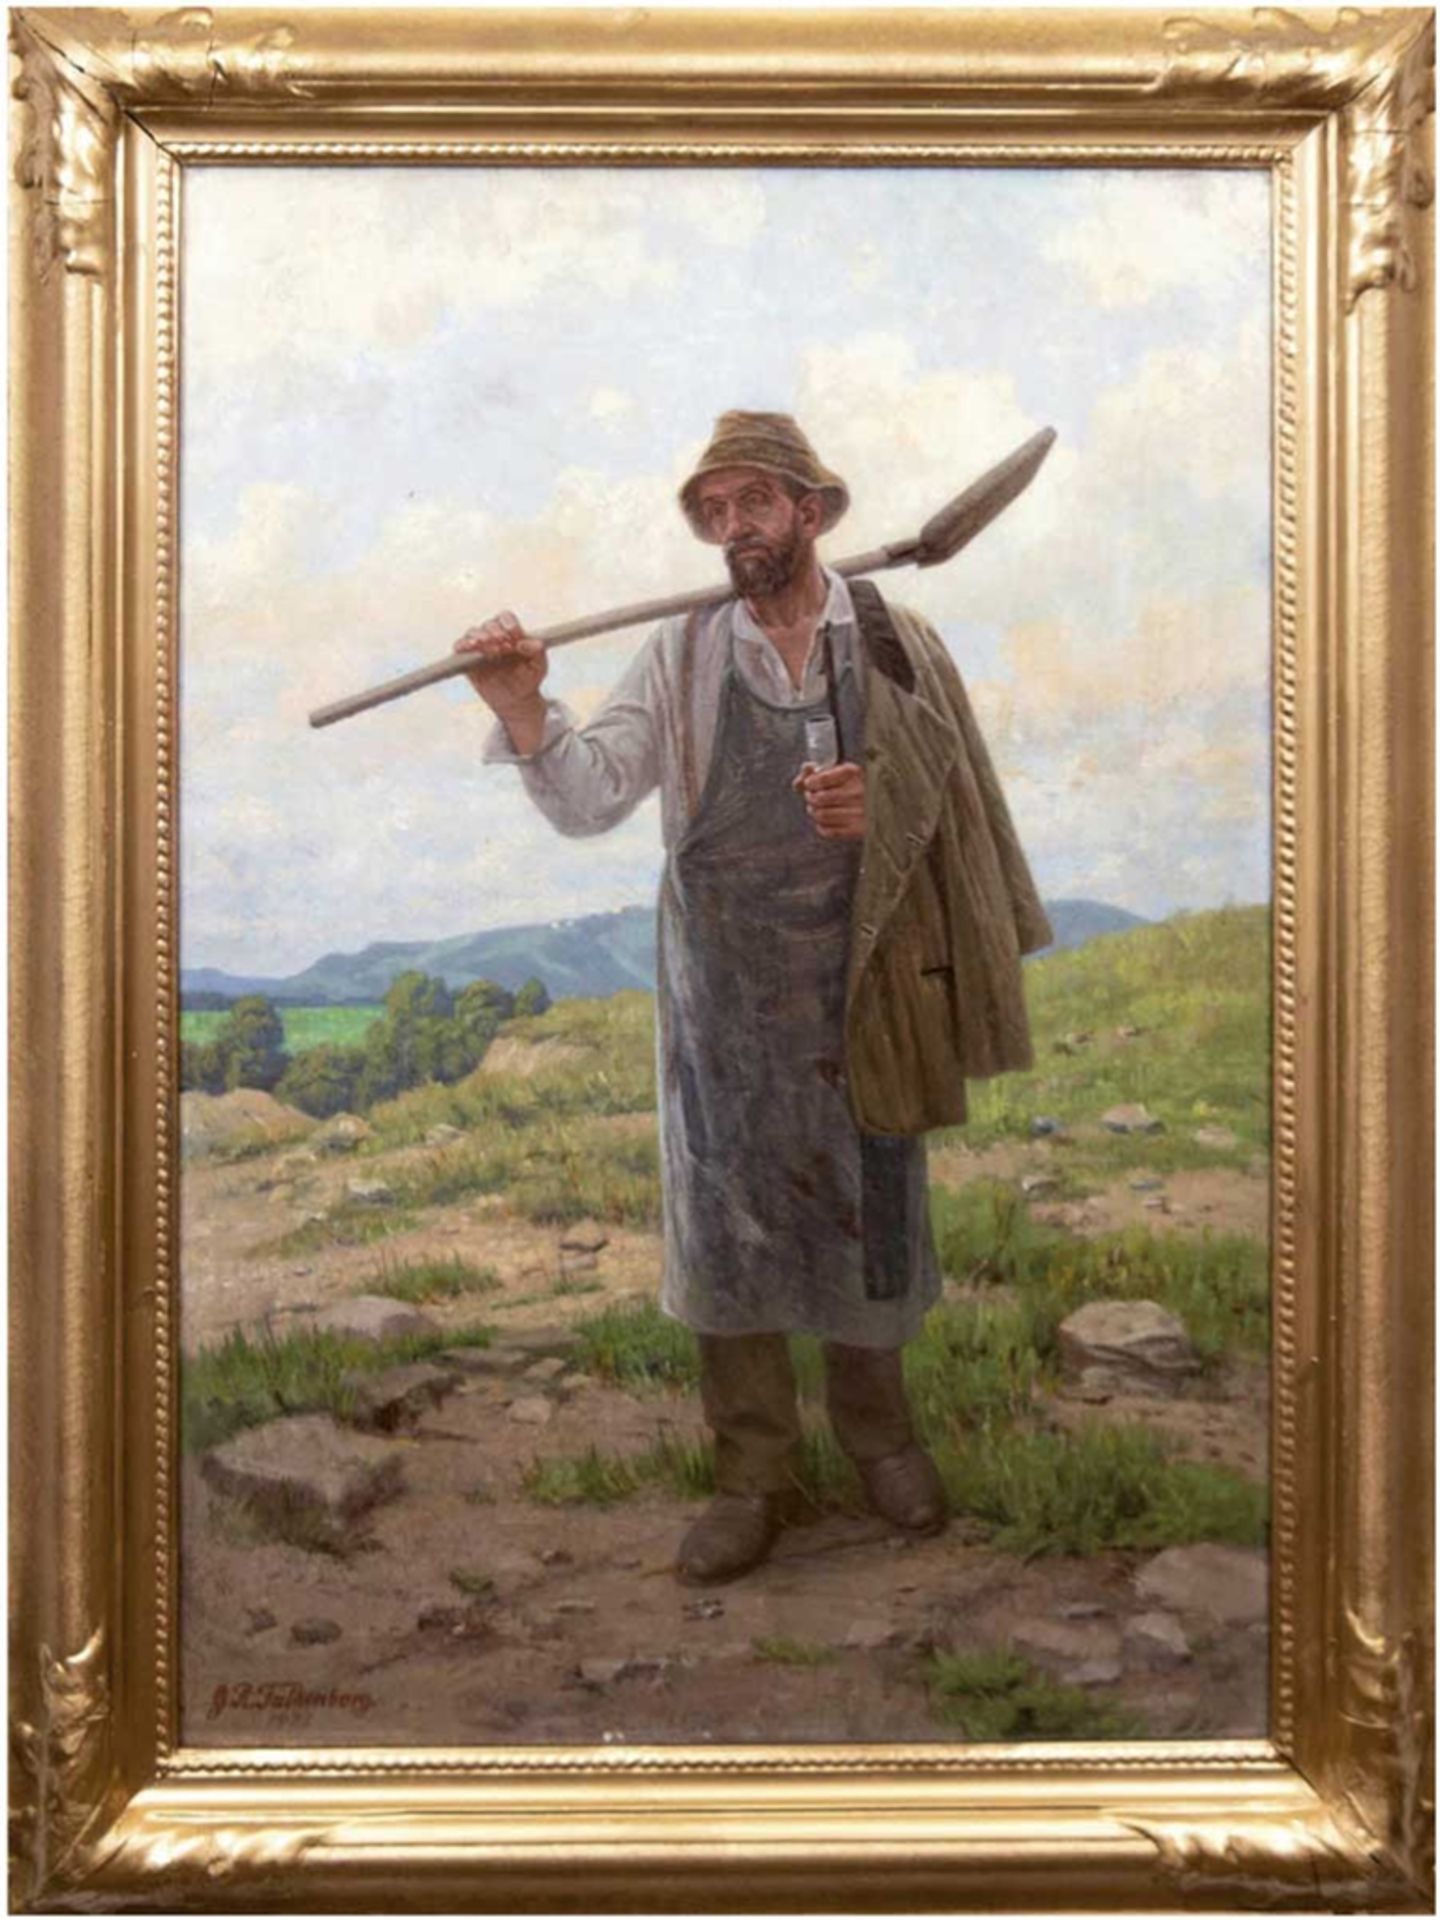 Falkenberg, Georg Richard (1850-1935) "Bauer nach getaner Arbeit", Öl/Lw., sign. u.l., 80x59 cm, Ra